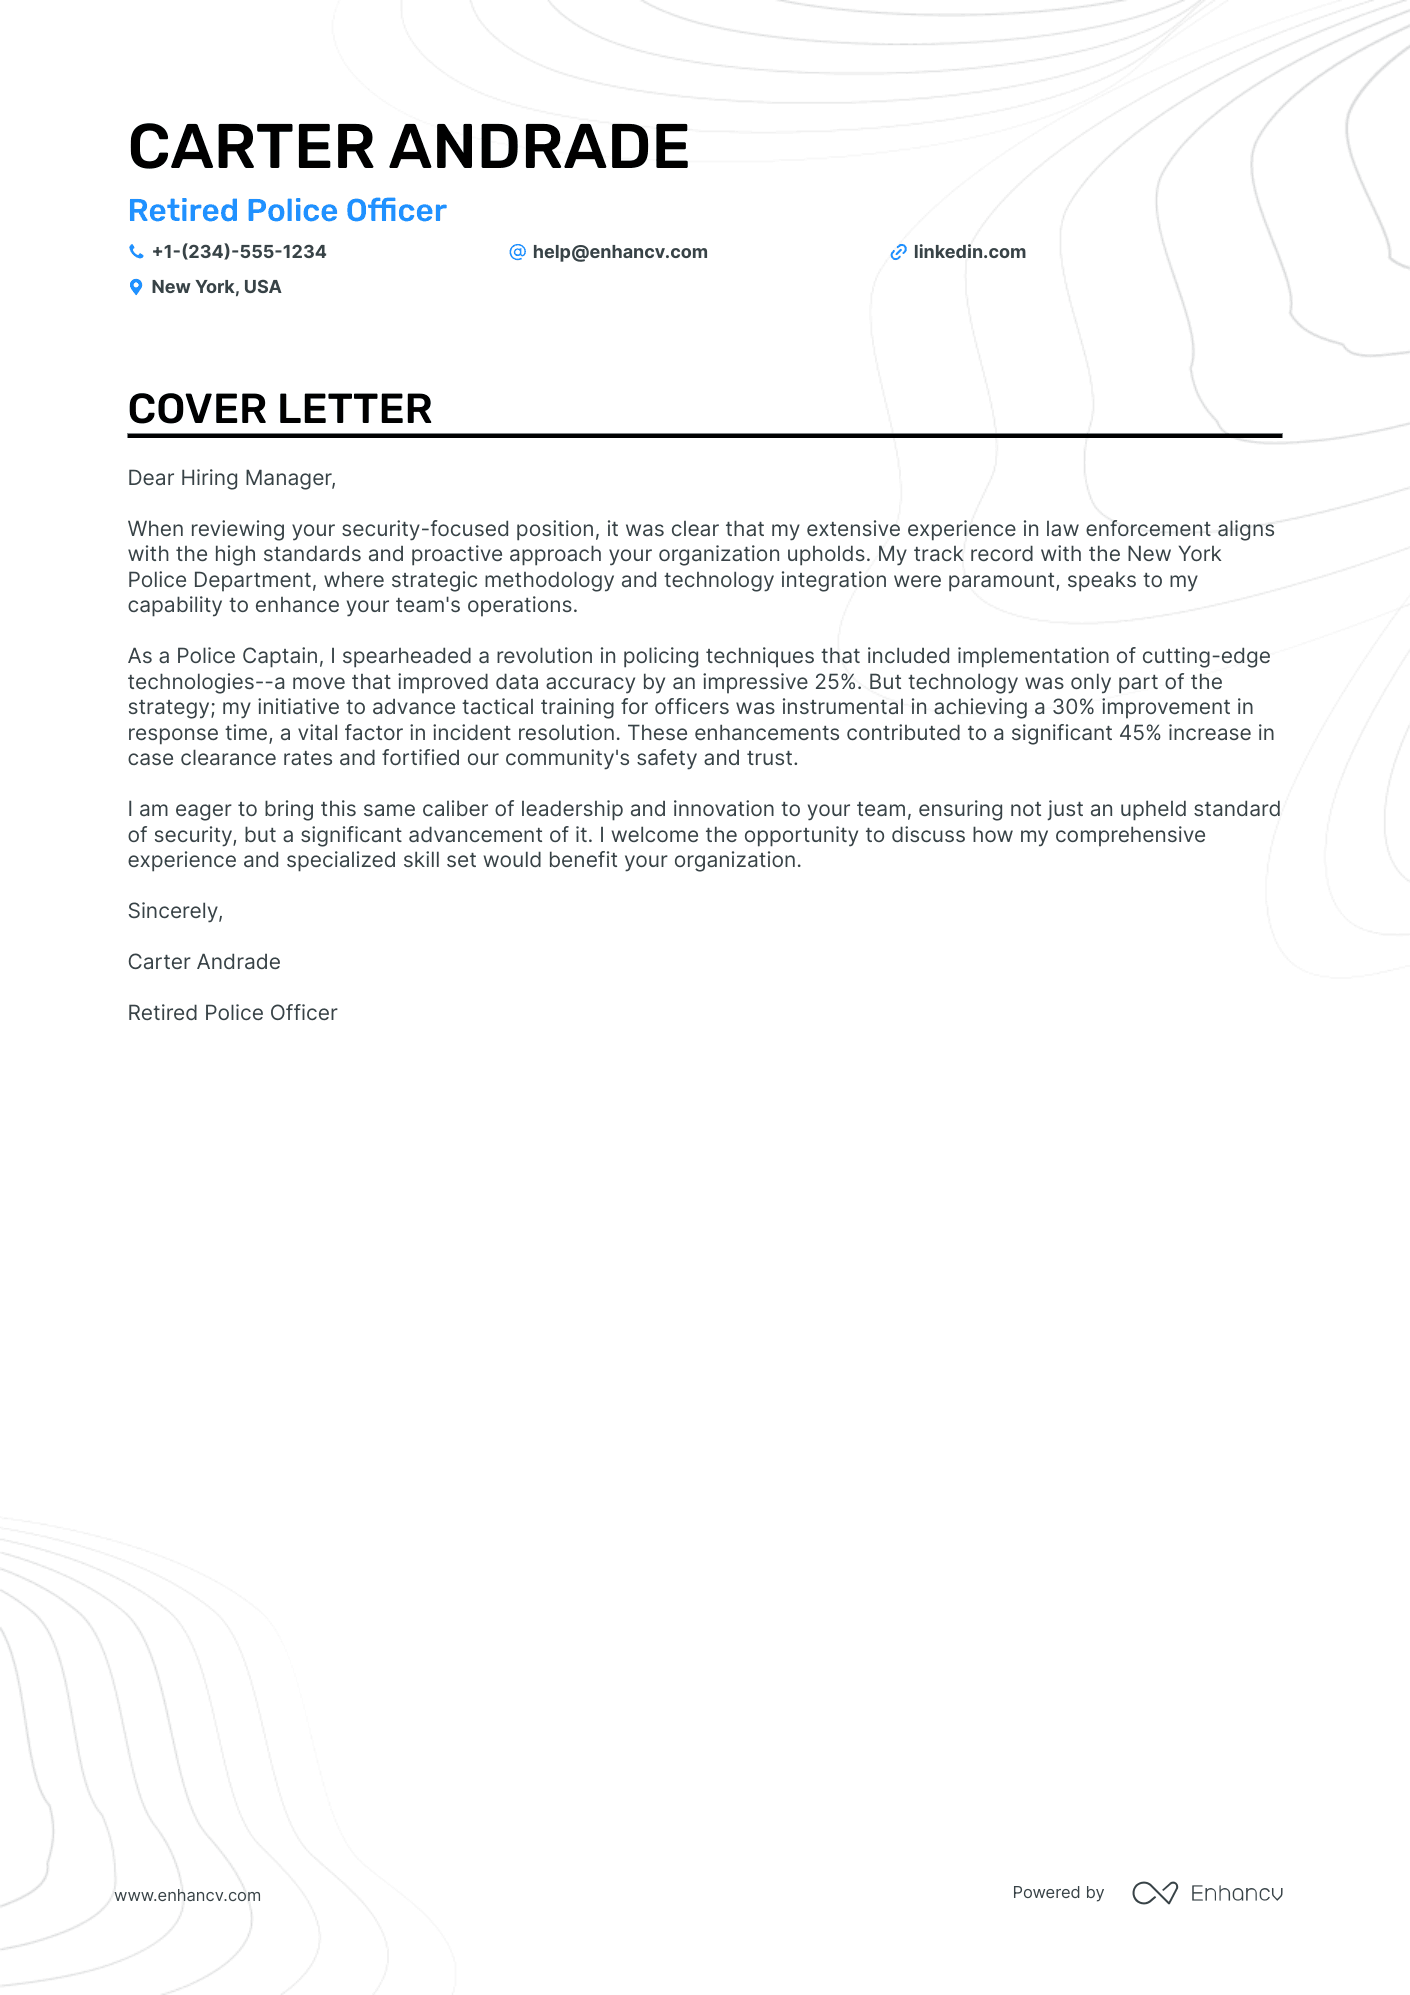 Retired Police Officer cover letter